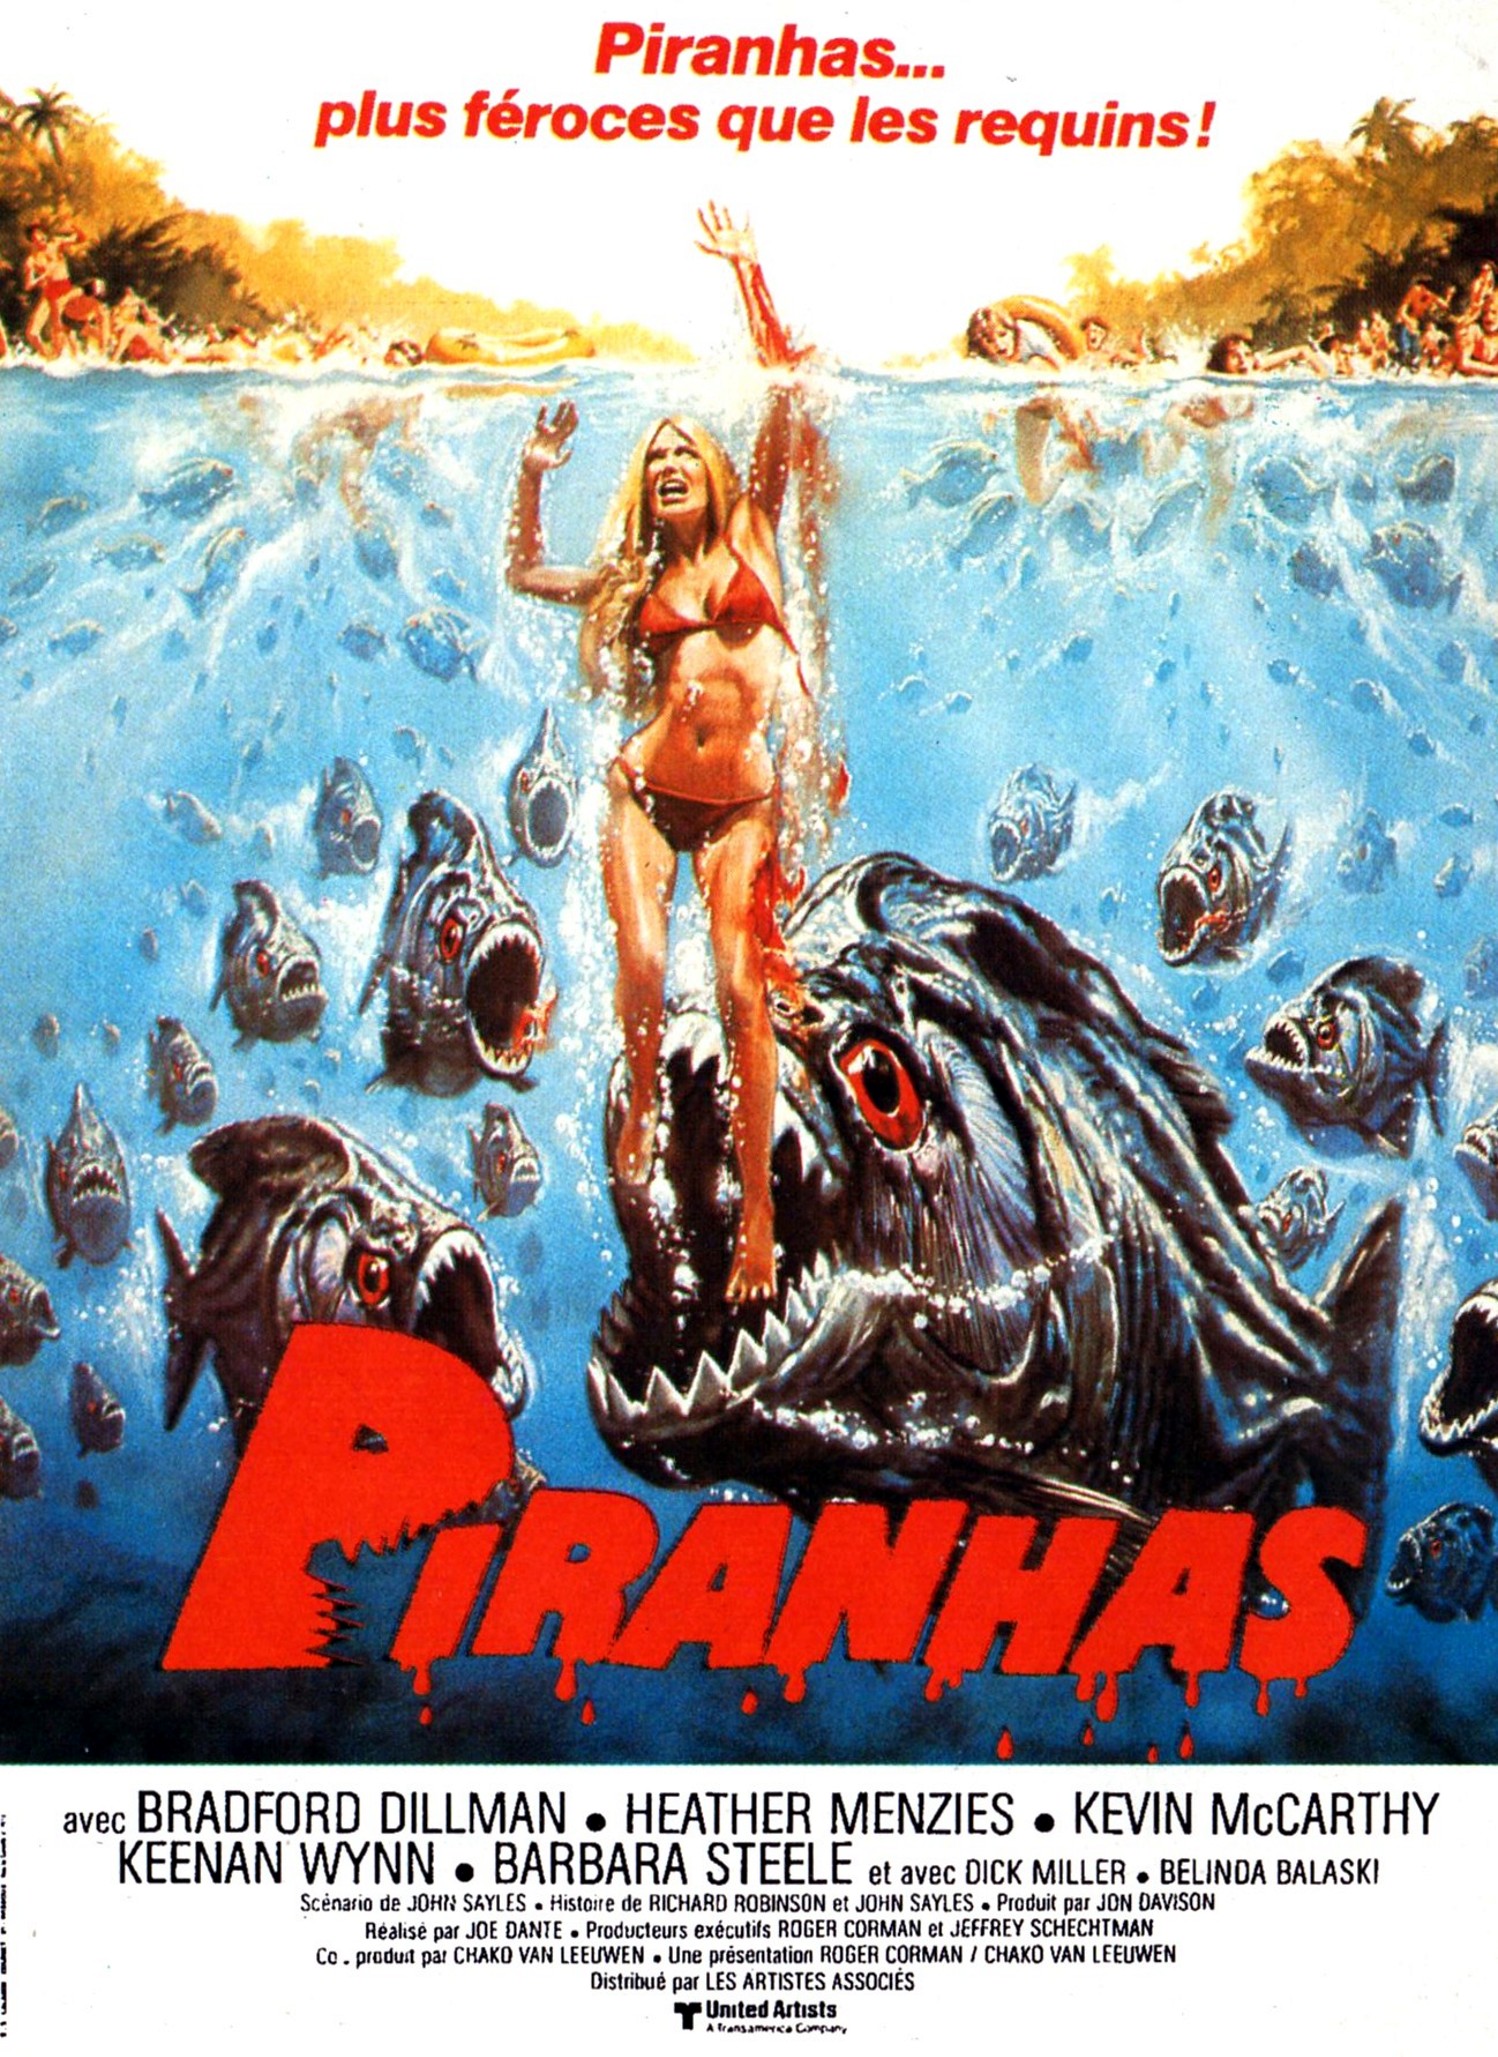 affiche du film Piranhas